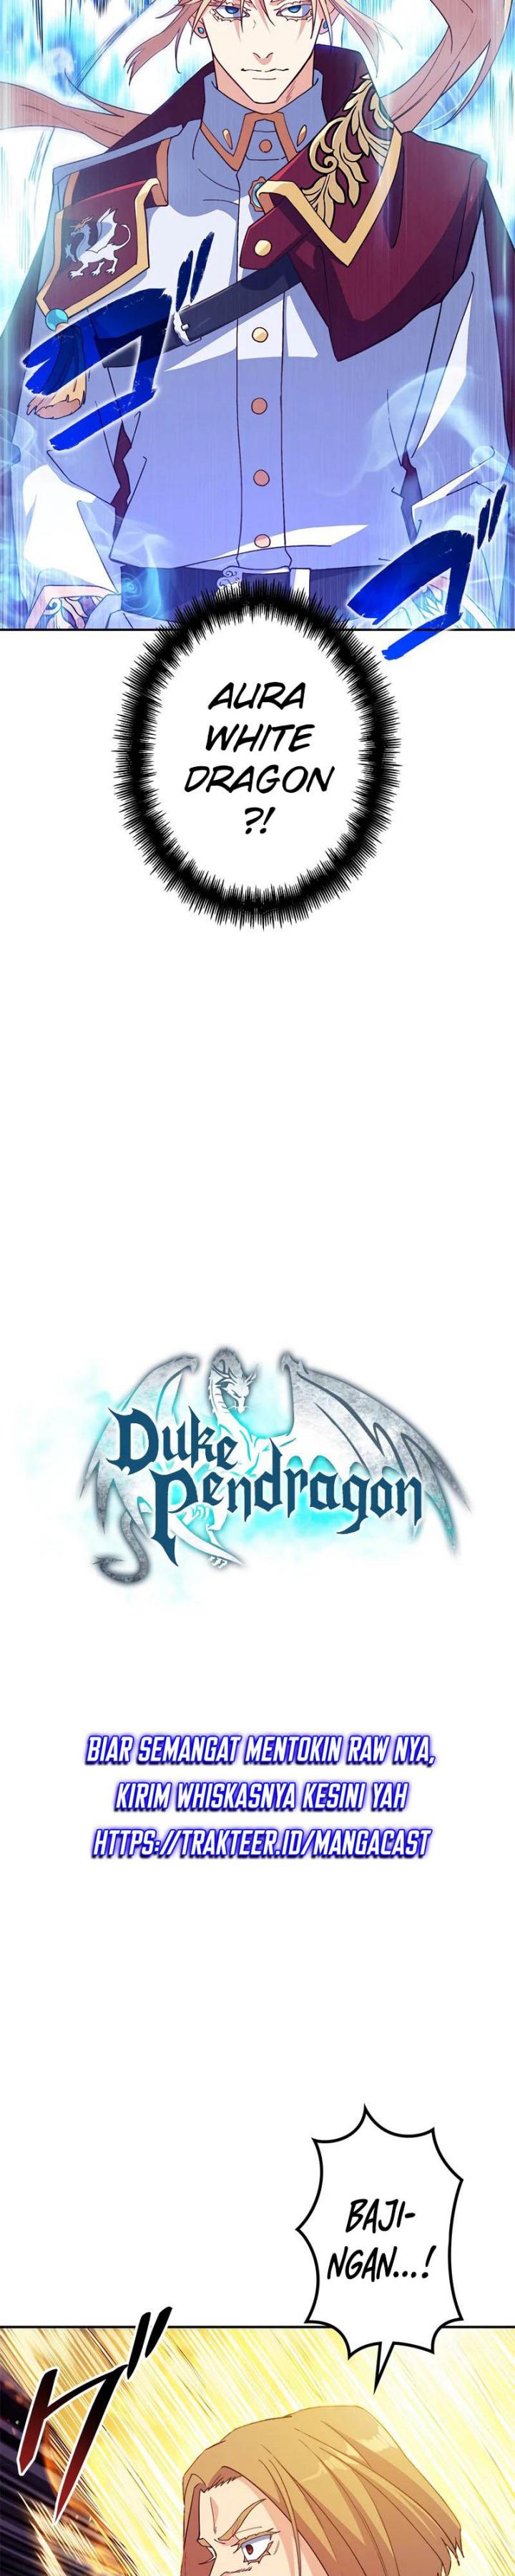 White Dragon Duke: Pendragon (Duke Pendragon) Chapter 42 - 283